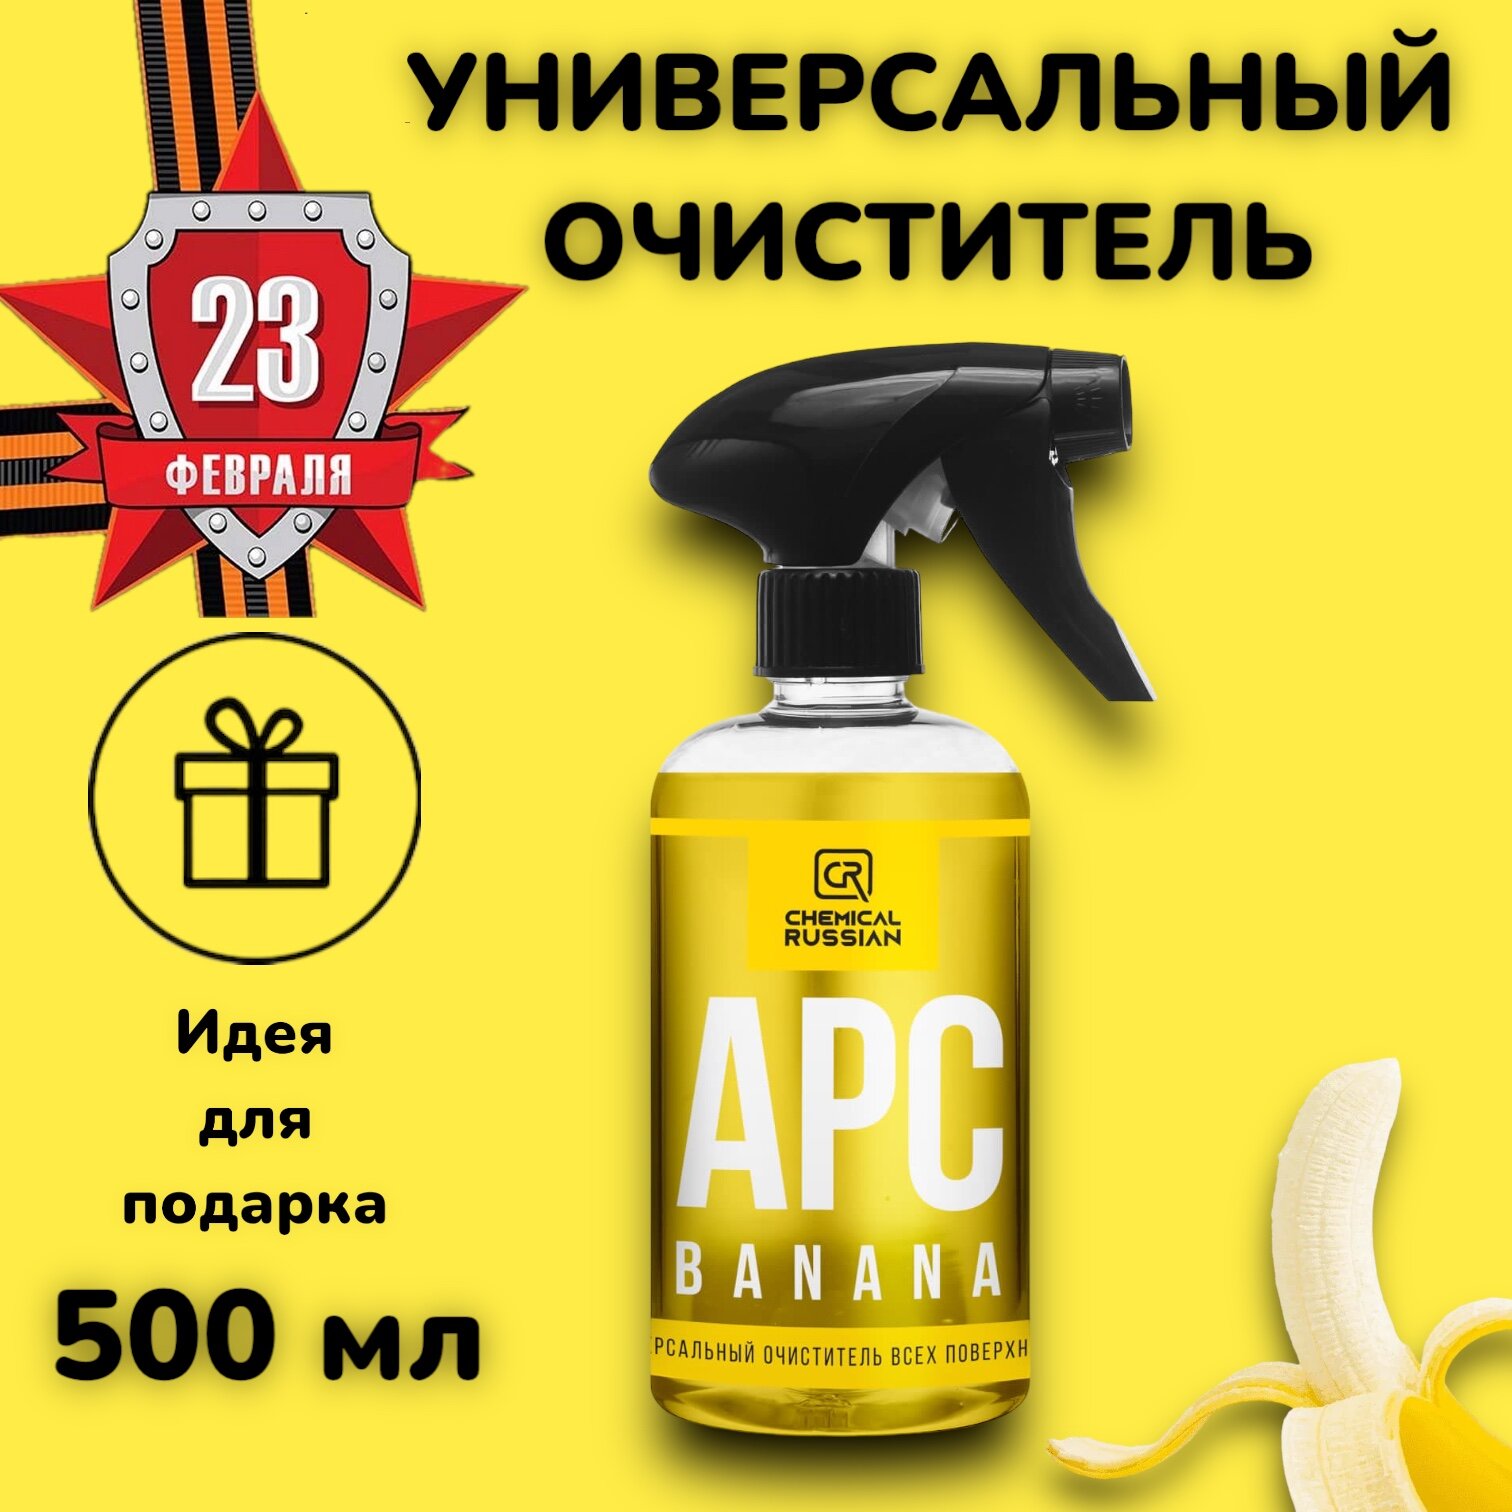 Универсальный очиститель - APC Banana 500 мл Chemical Russian